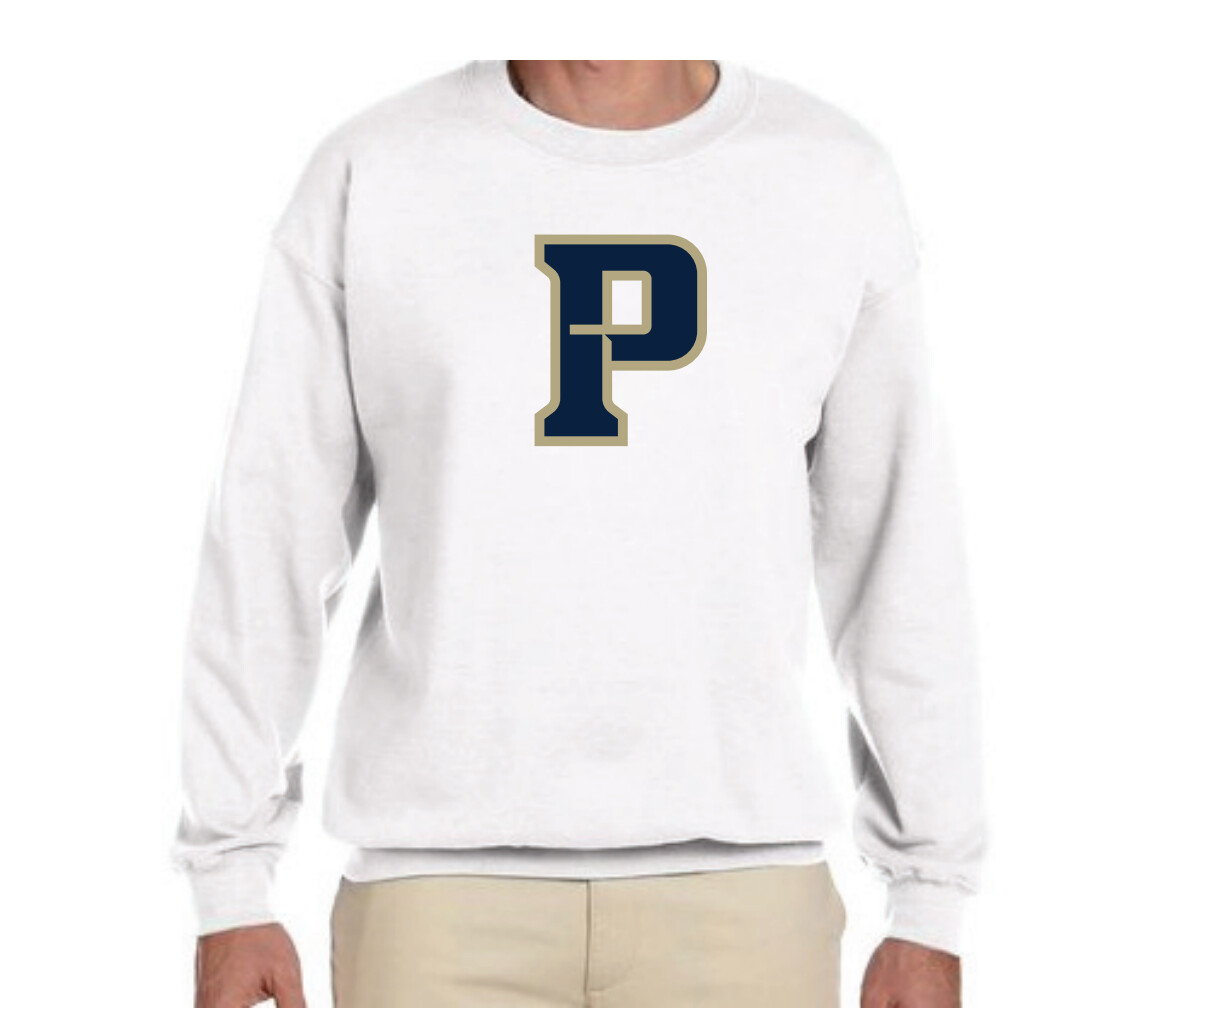 Nike White Fleece Sweatshirt with "P" Logo